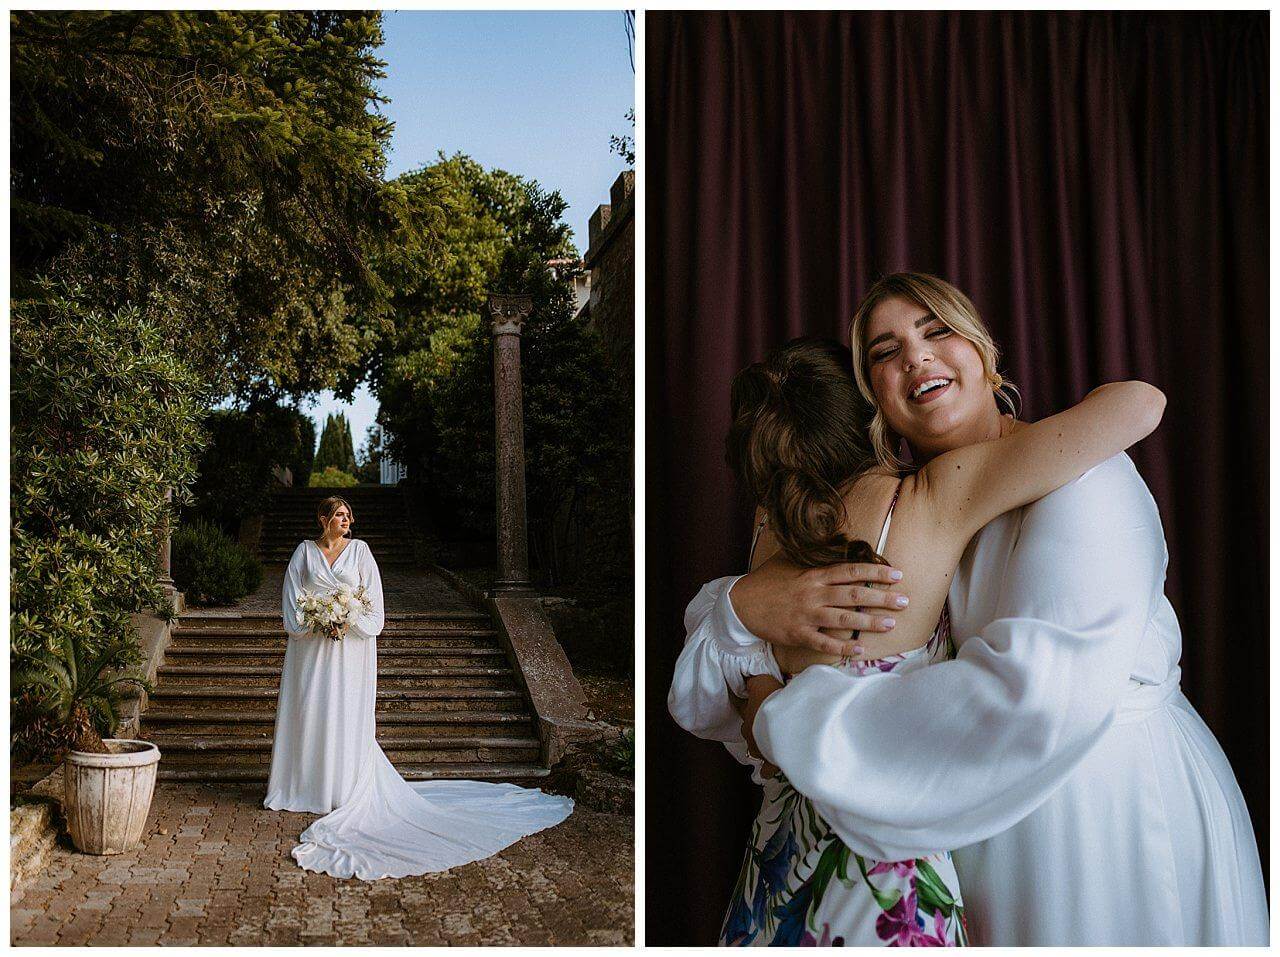 Braut in weiß mit weißen Brautstrauß vor Steintreppe und Braut mit Brautjungfer bei ihrer Hochzeit in Istrien Kroatien